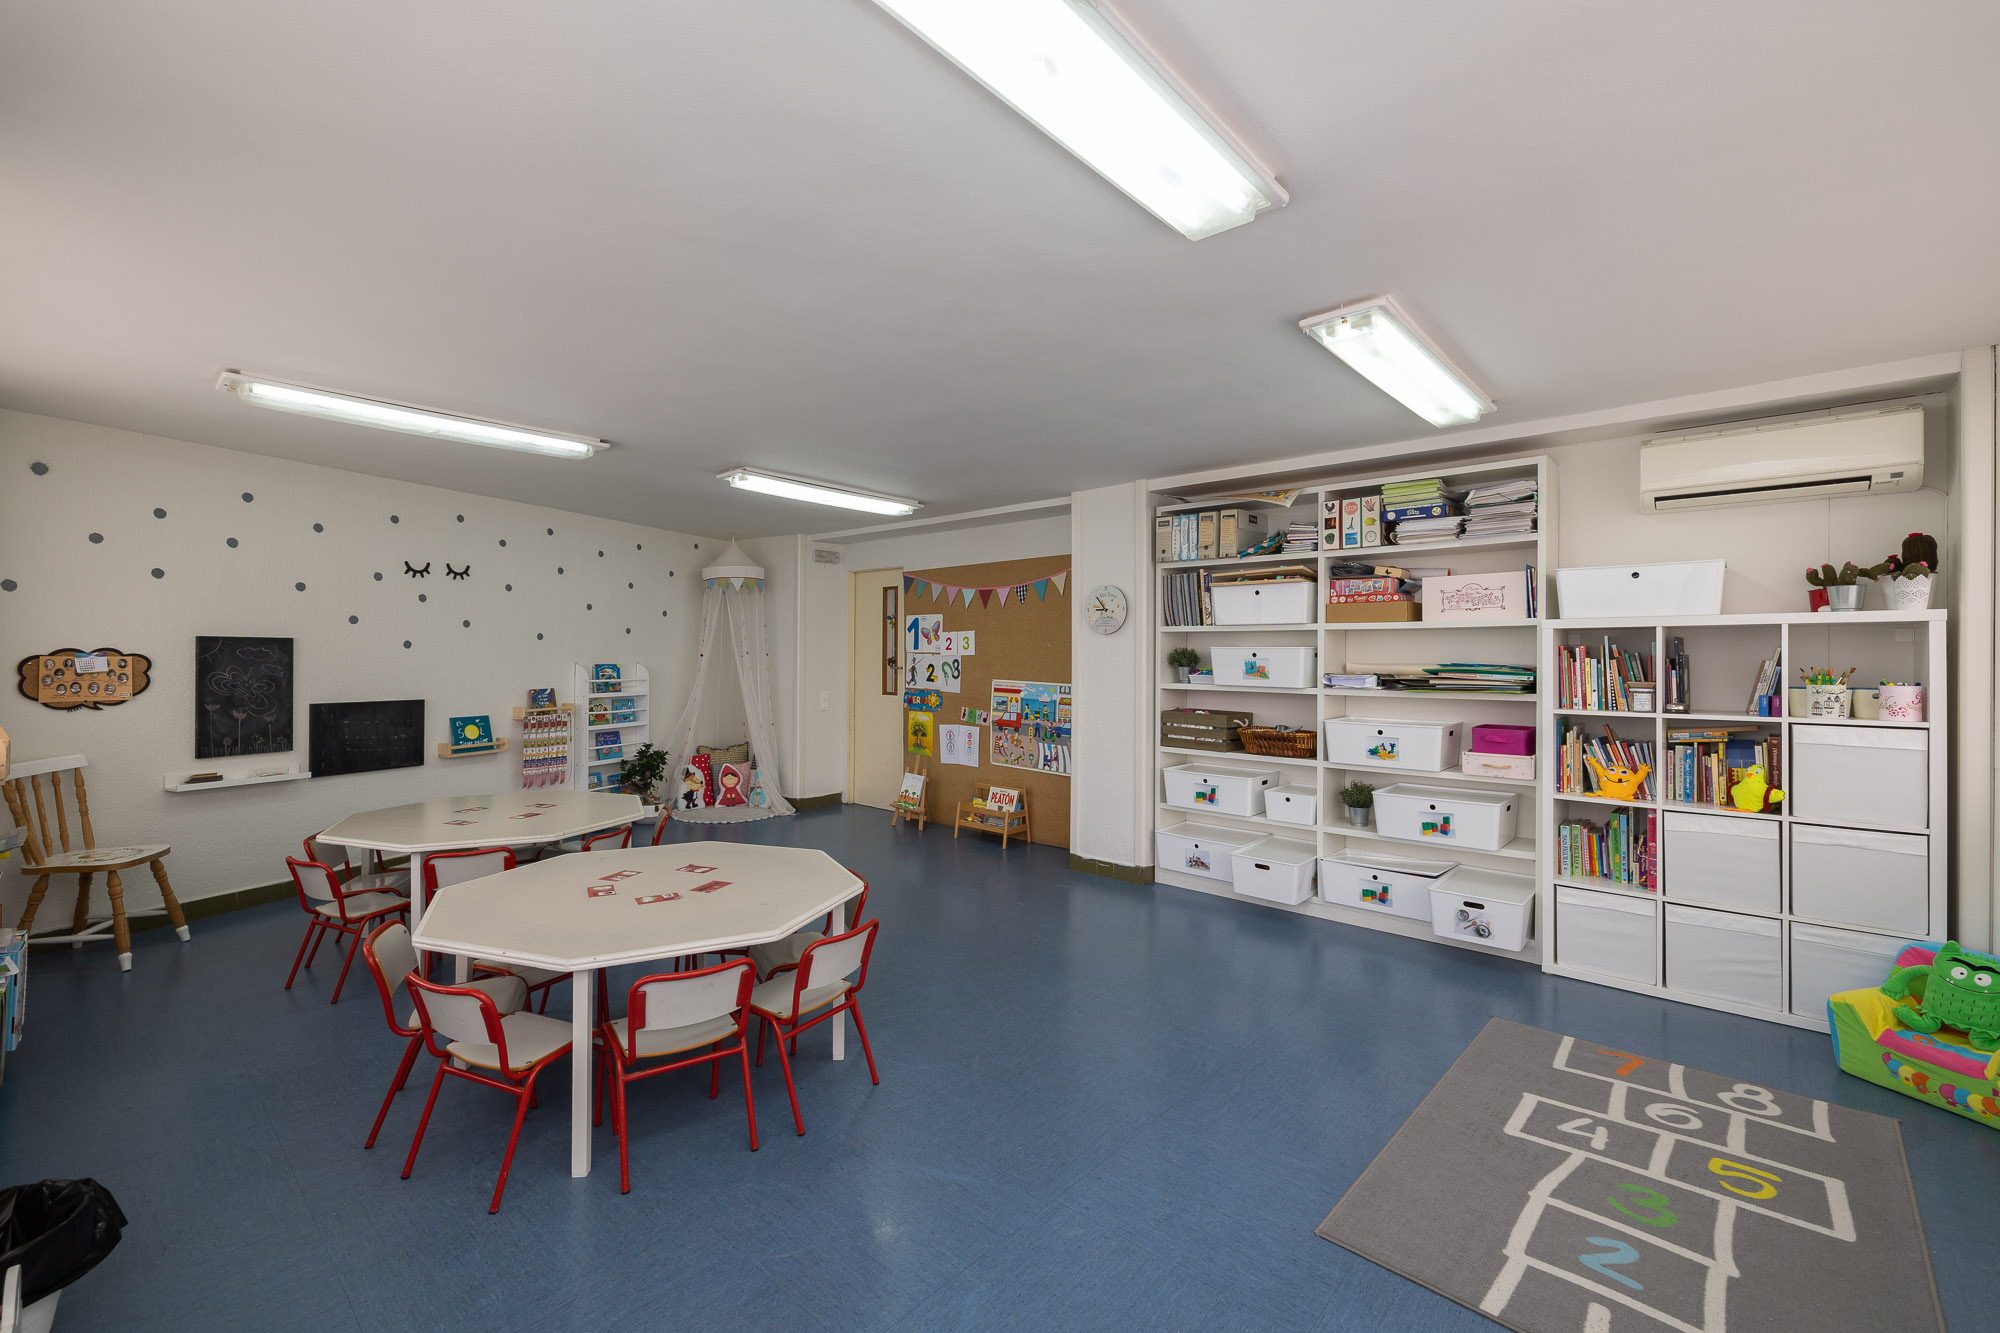 Imagina centro educación infantil Zamora aula interactiva